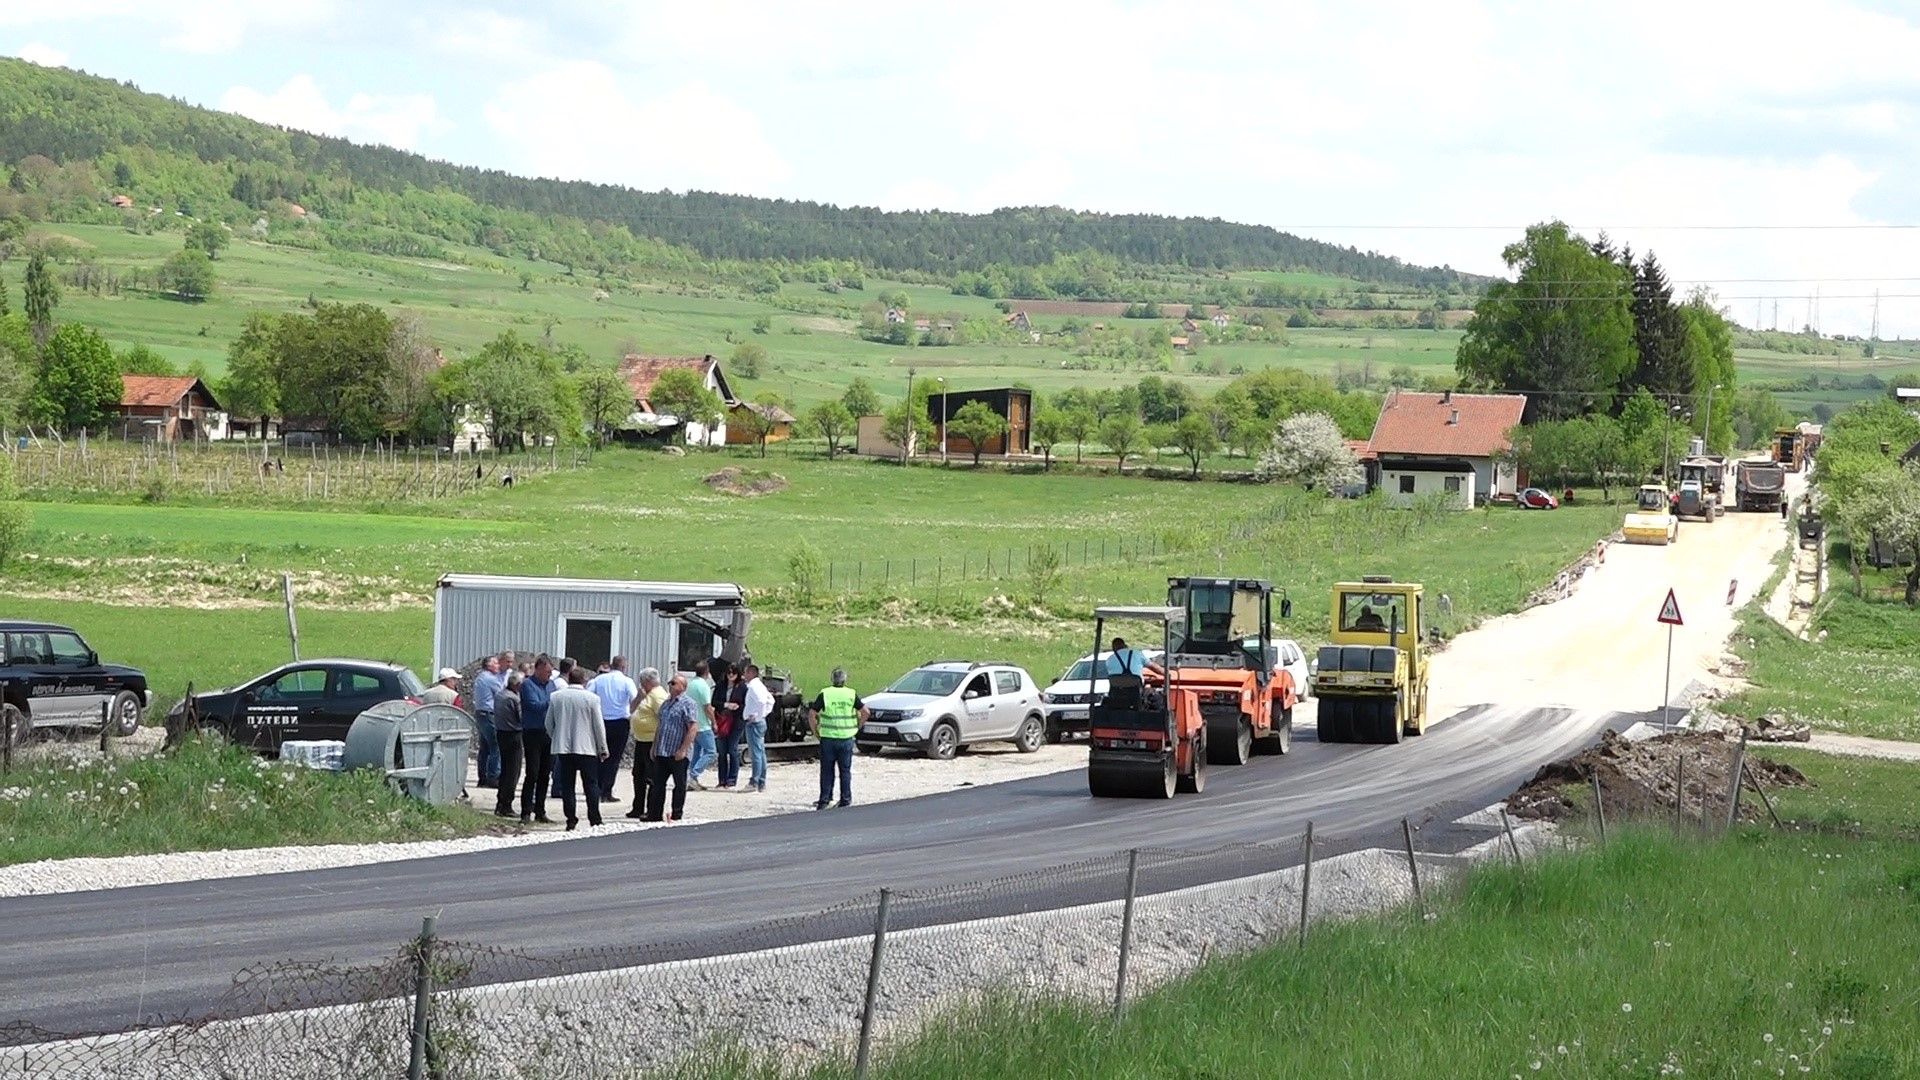 Ради се ударнички - асфалт стигао у центар Радоиње  (Фото: Б. Јелић)